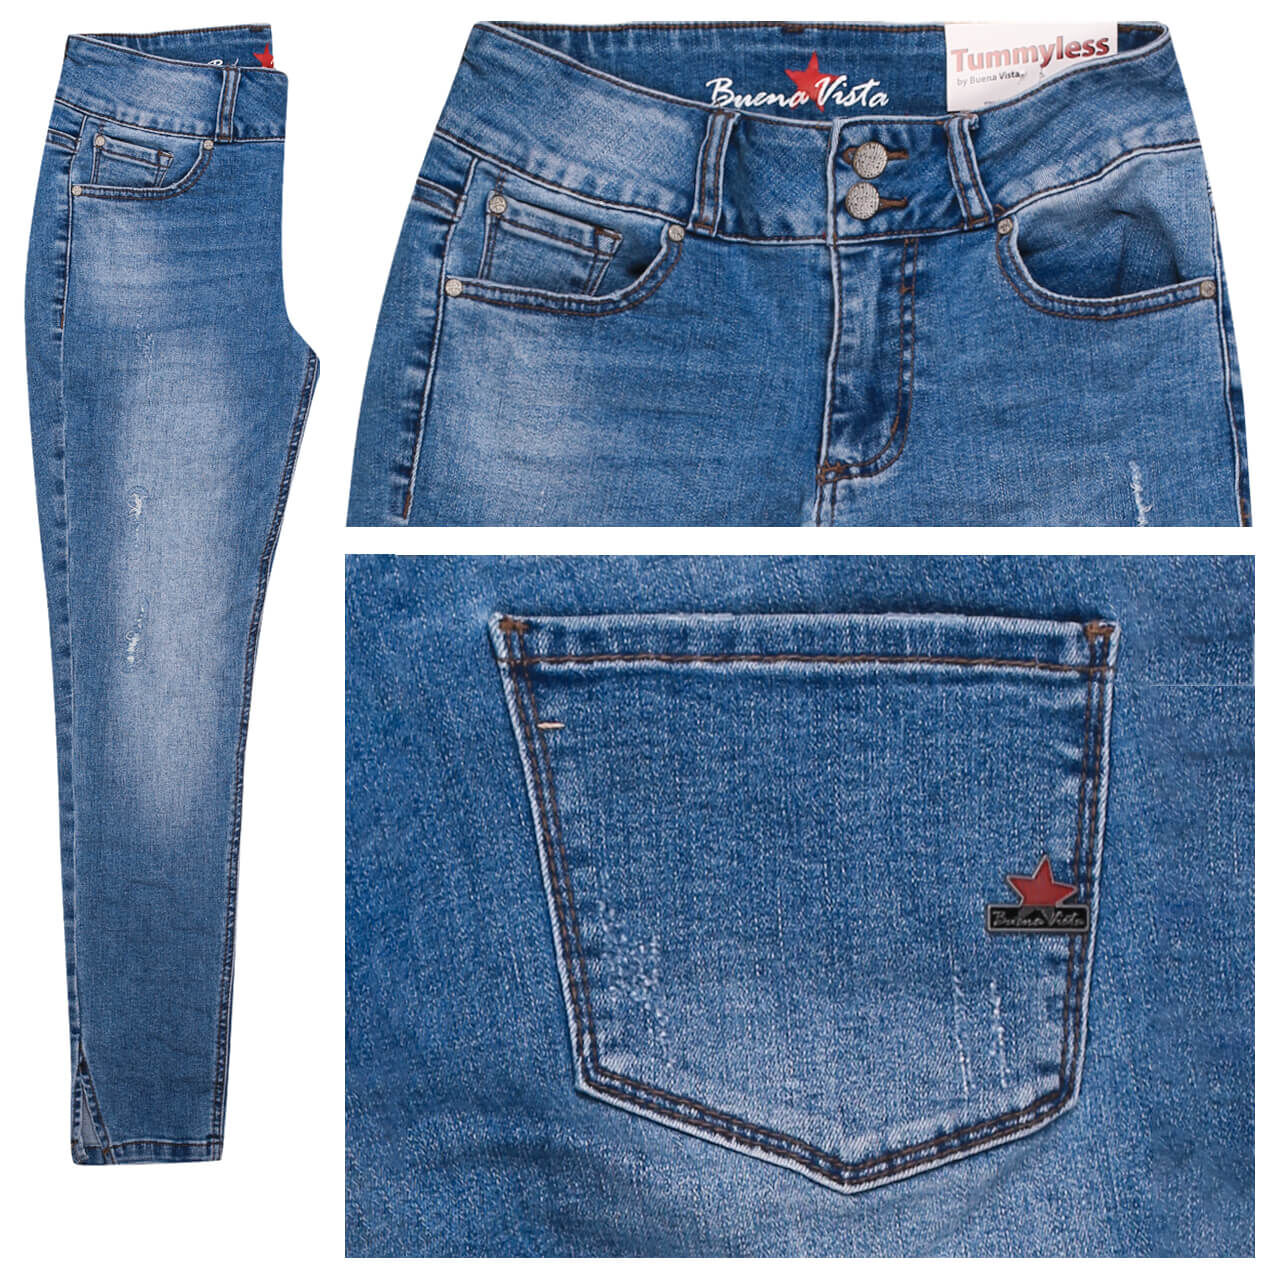 Buena Vista Jeans Tummyless 7/8 Stretch Denim für Damen in Blau angewaschen mit Destroyed-Effekten, FarbNr.: 3898